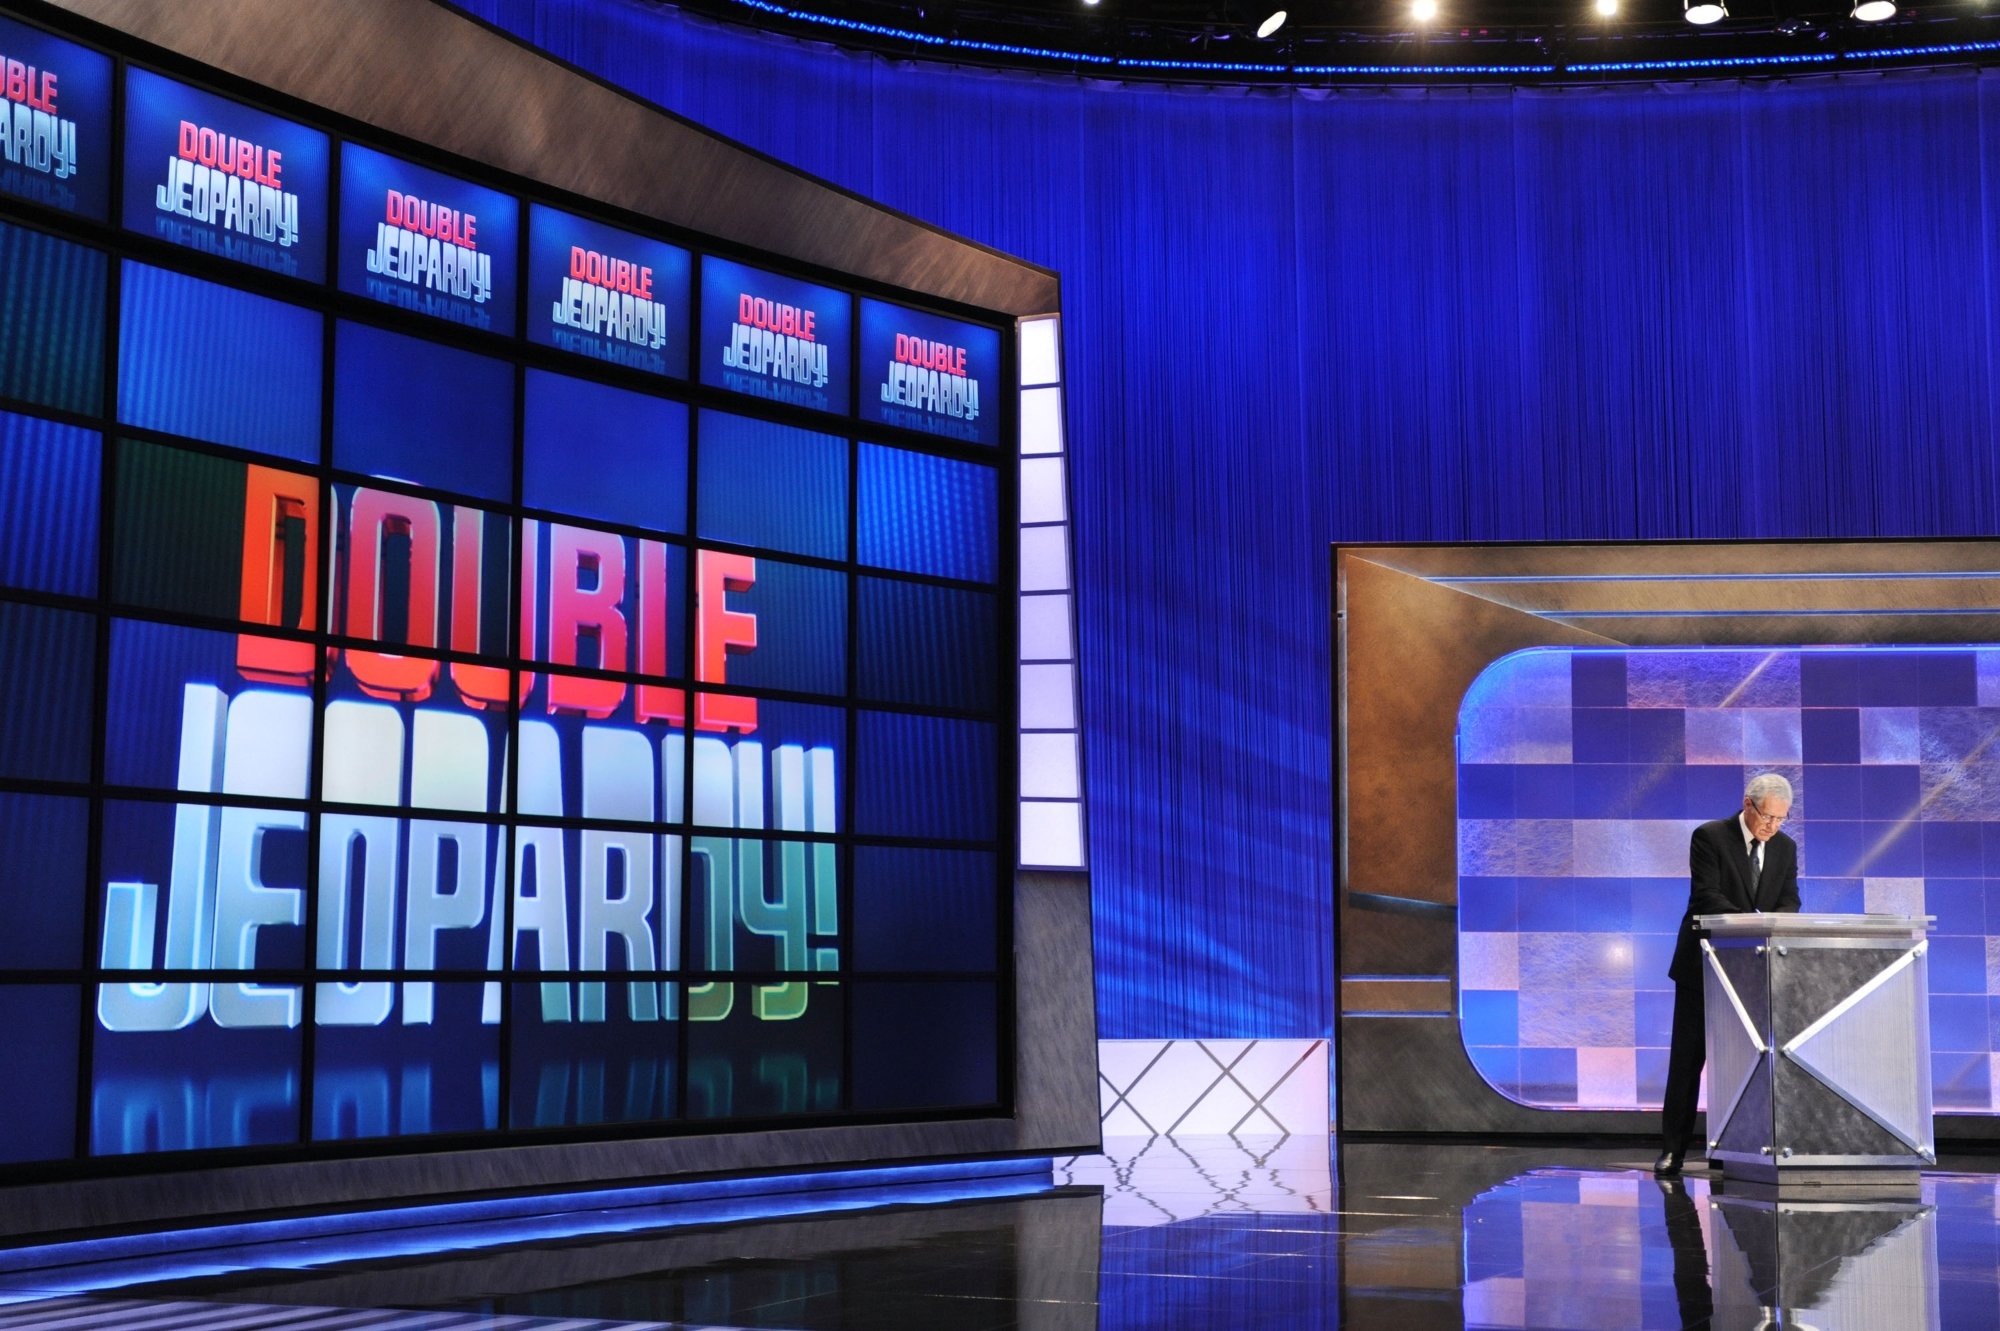 「危険！」 コマーシャルの前にショーをリードするアレックス・トレベック。 彼は、Double Jeopardy ボードを後ろにして、スーツを着て表彰台に立っています。